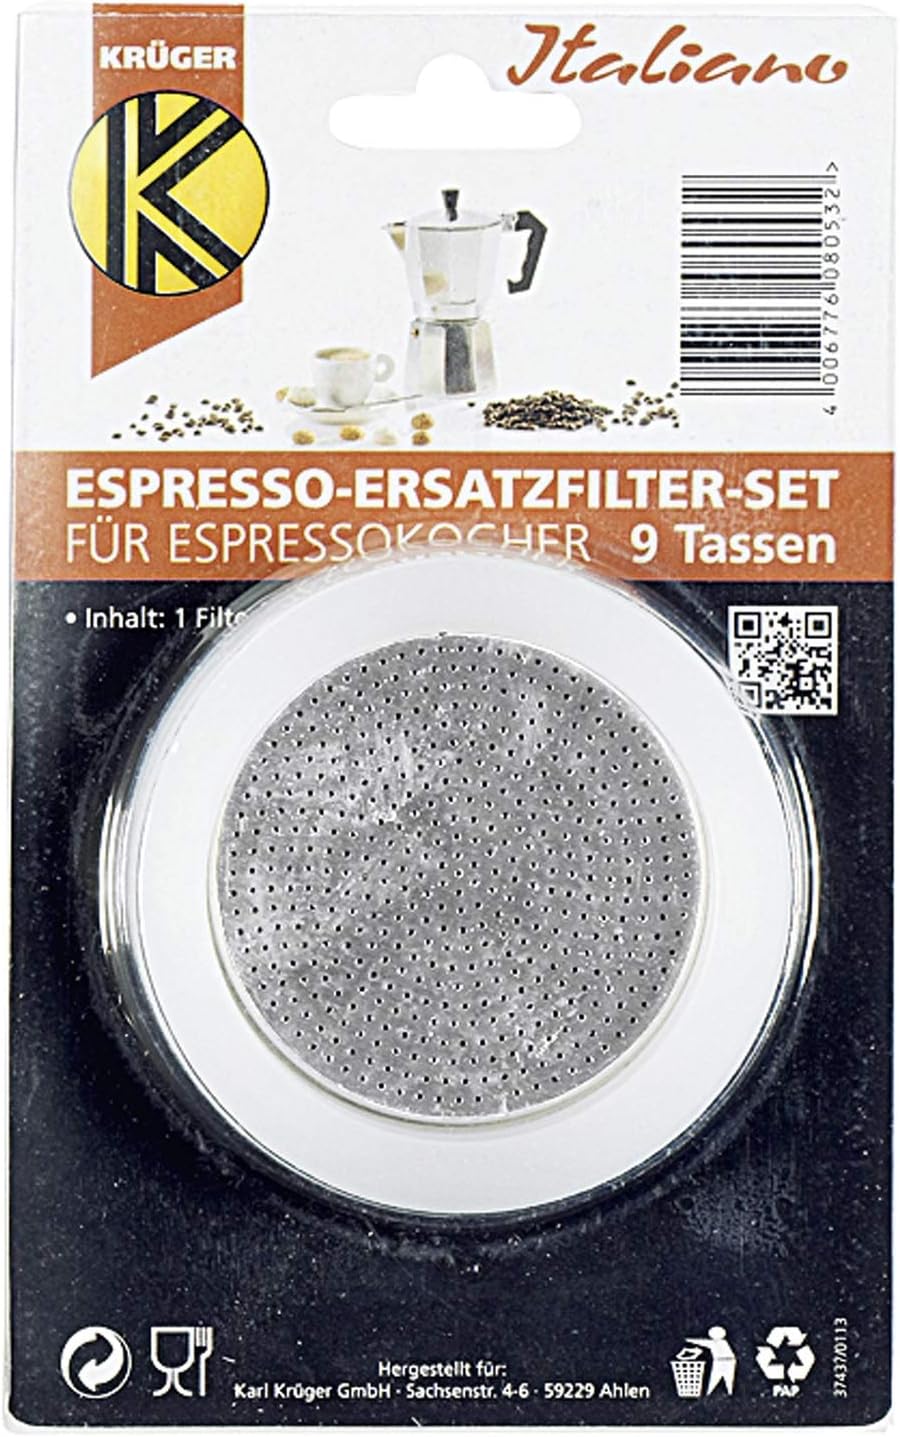 Karl Krüger 506s 1 Filter and 3 Eichtr. f. Espressok 9 t, silicone, white